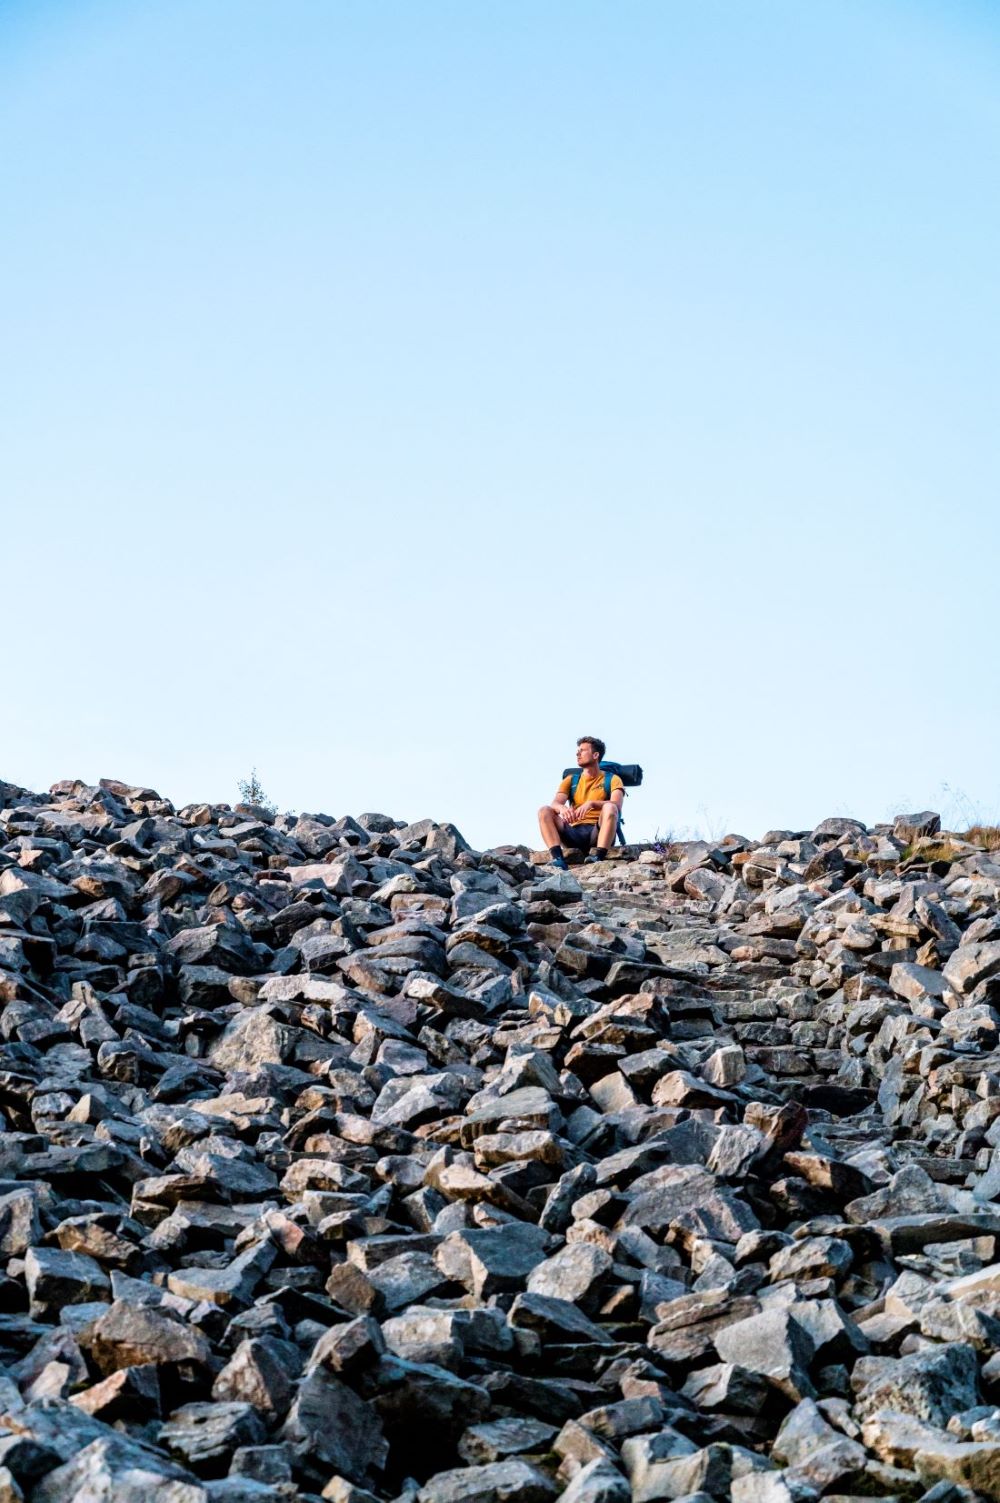 Un homme portant une chemise jaune et un équipement de randonnée est photographié au sommet d'un tas de rochers.